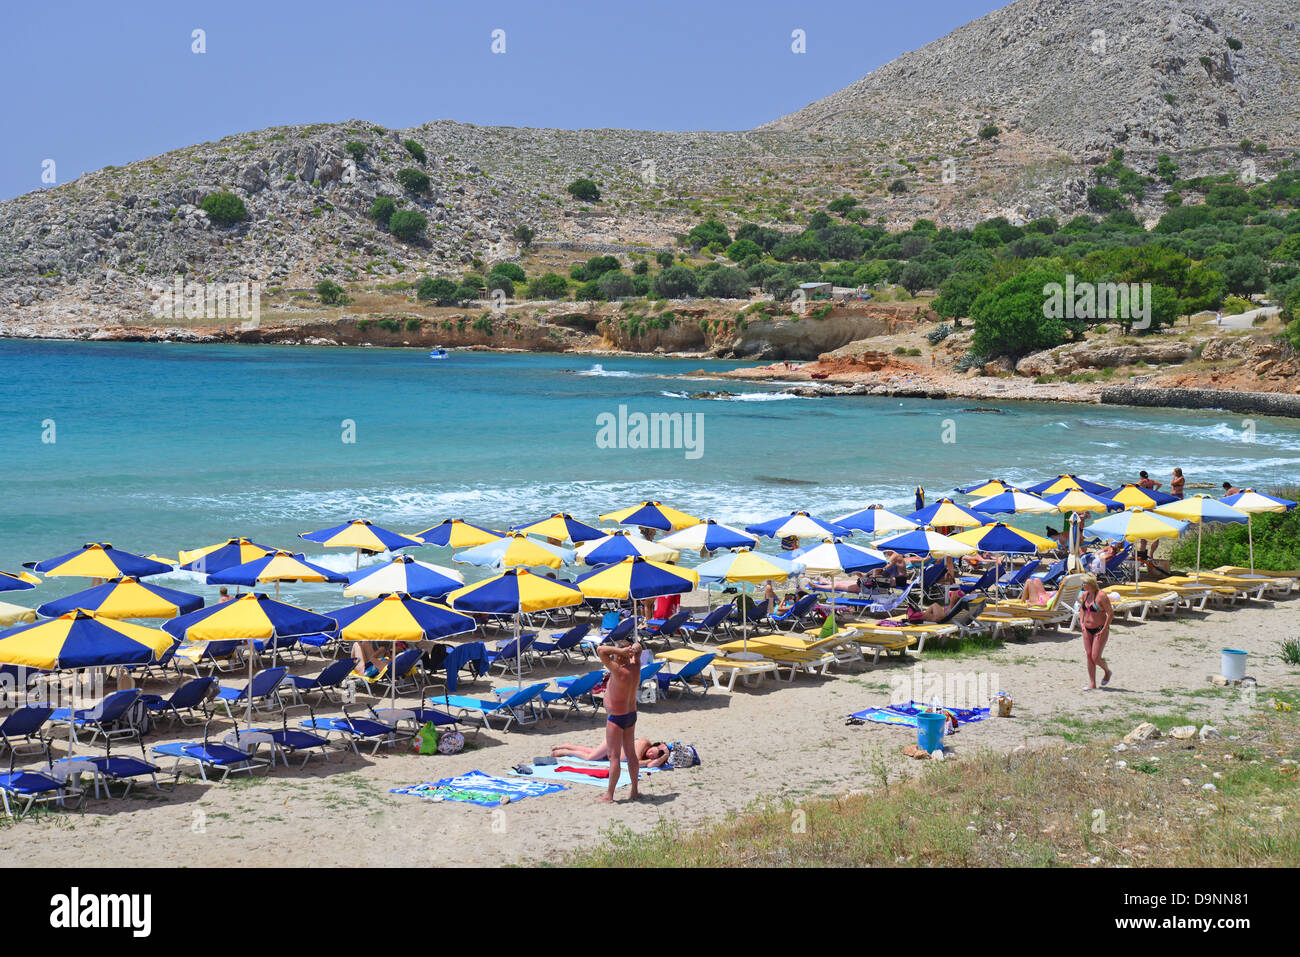 Plage de Pondamos, Halki (Chalki), Rhodes (Rodos) région, le Dodécanèse, Grèce, région sud de la Mer Egée Banque D'Images